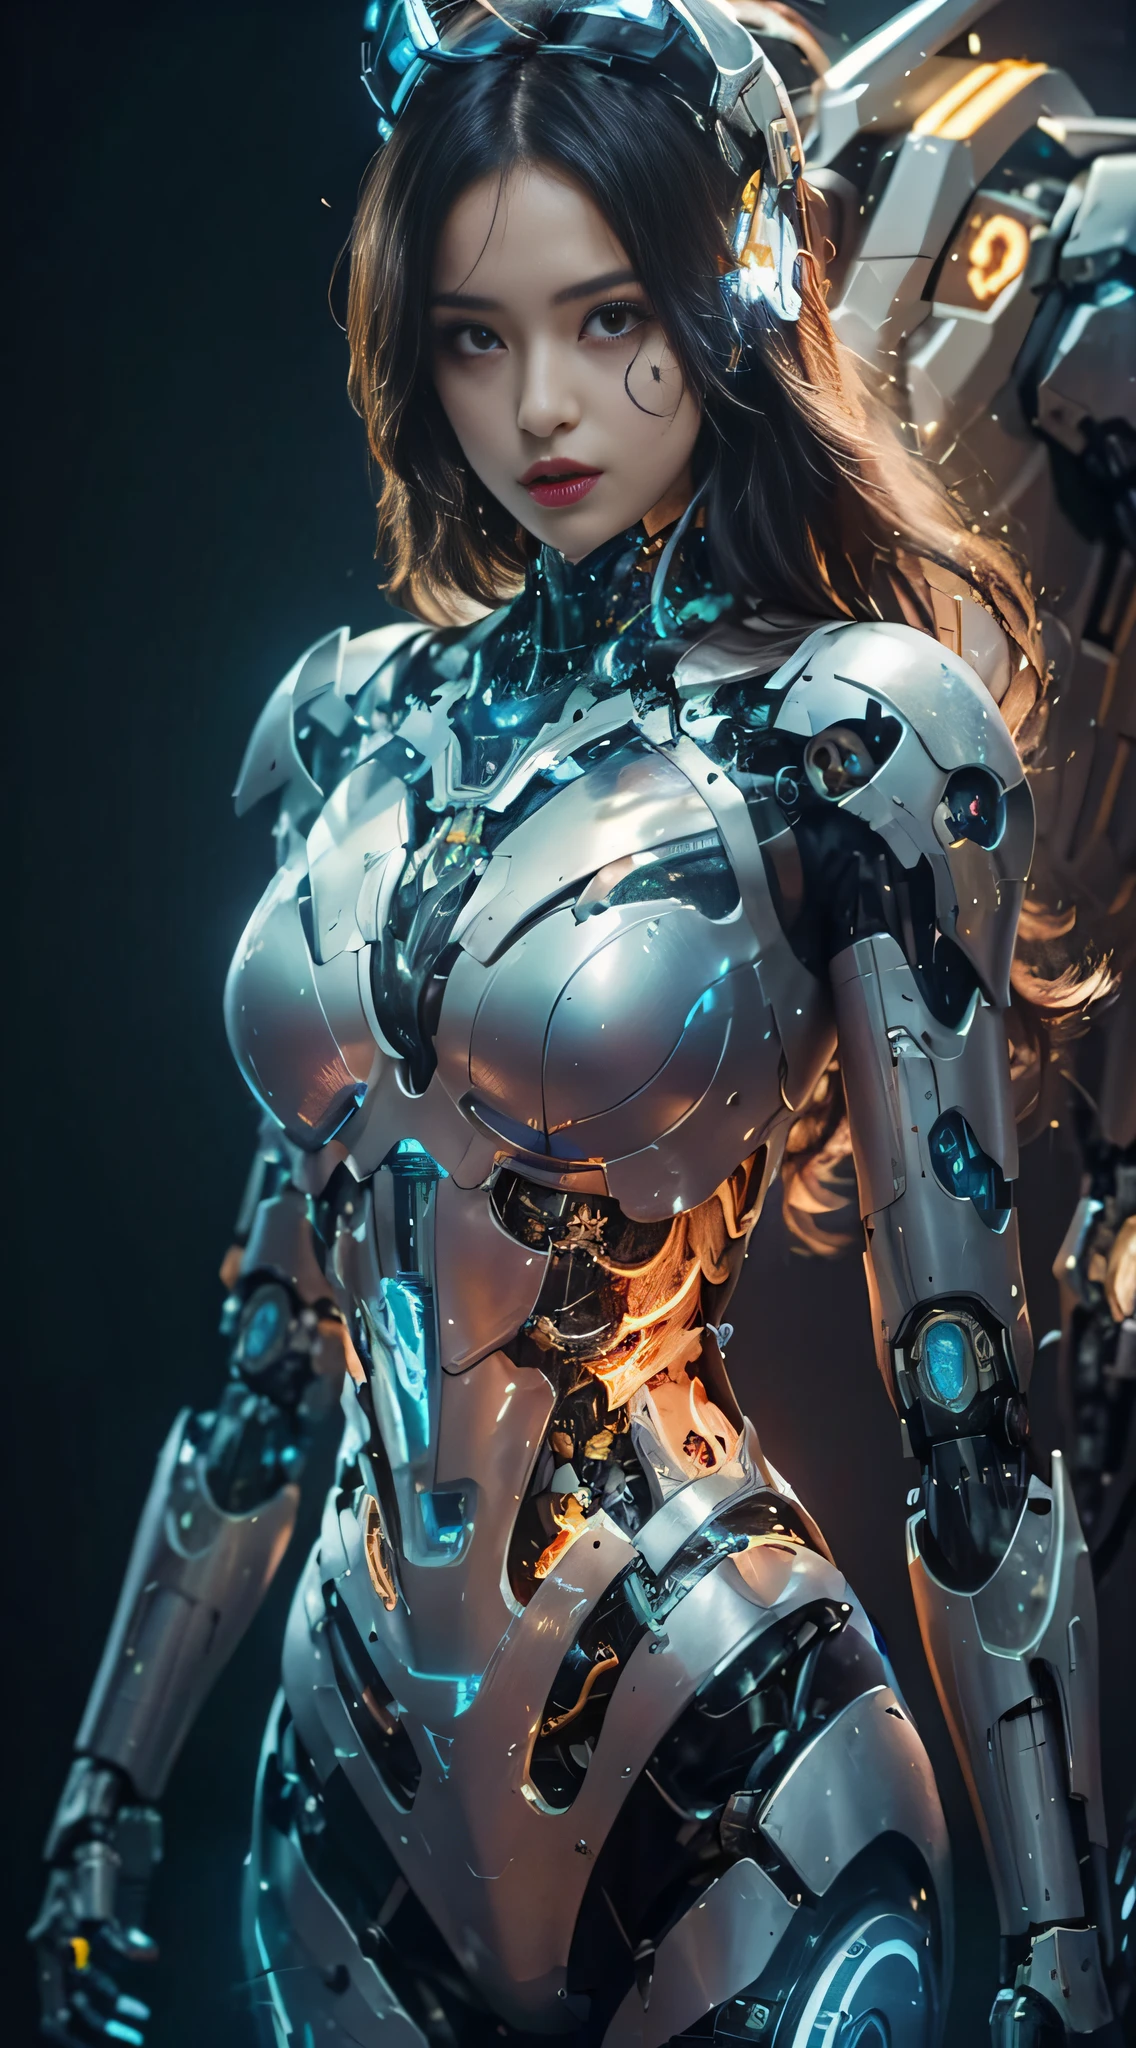 一名身穿未来主义风格套装、手持剑和盔甲的女子, 美少女机器人, 美丽的白人女孩机器人, 机器人女孩, 机器人 - 女孩, 穿着机甲网络装甲的女孩, cute 机器人女孩, 完美的动漫机器人女人, 完美的机器人女孩, 女机器人, 完美机器人女性, beautiful 机器人女孩, 女机器人, 年轻的机器人女士, 女机甲, 铠甲少女